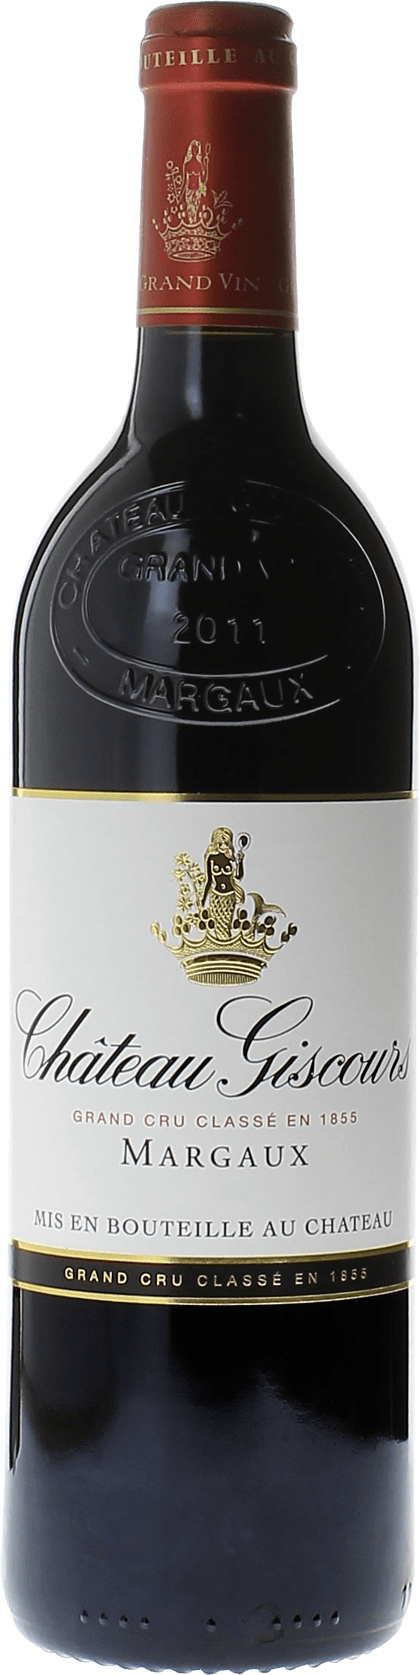 Giscours 1982 3me Grand cru class Margaux, Bordeaux rouge